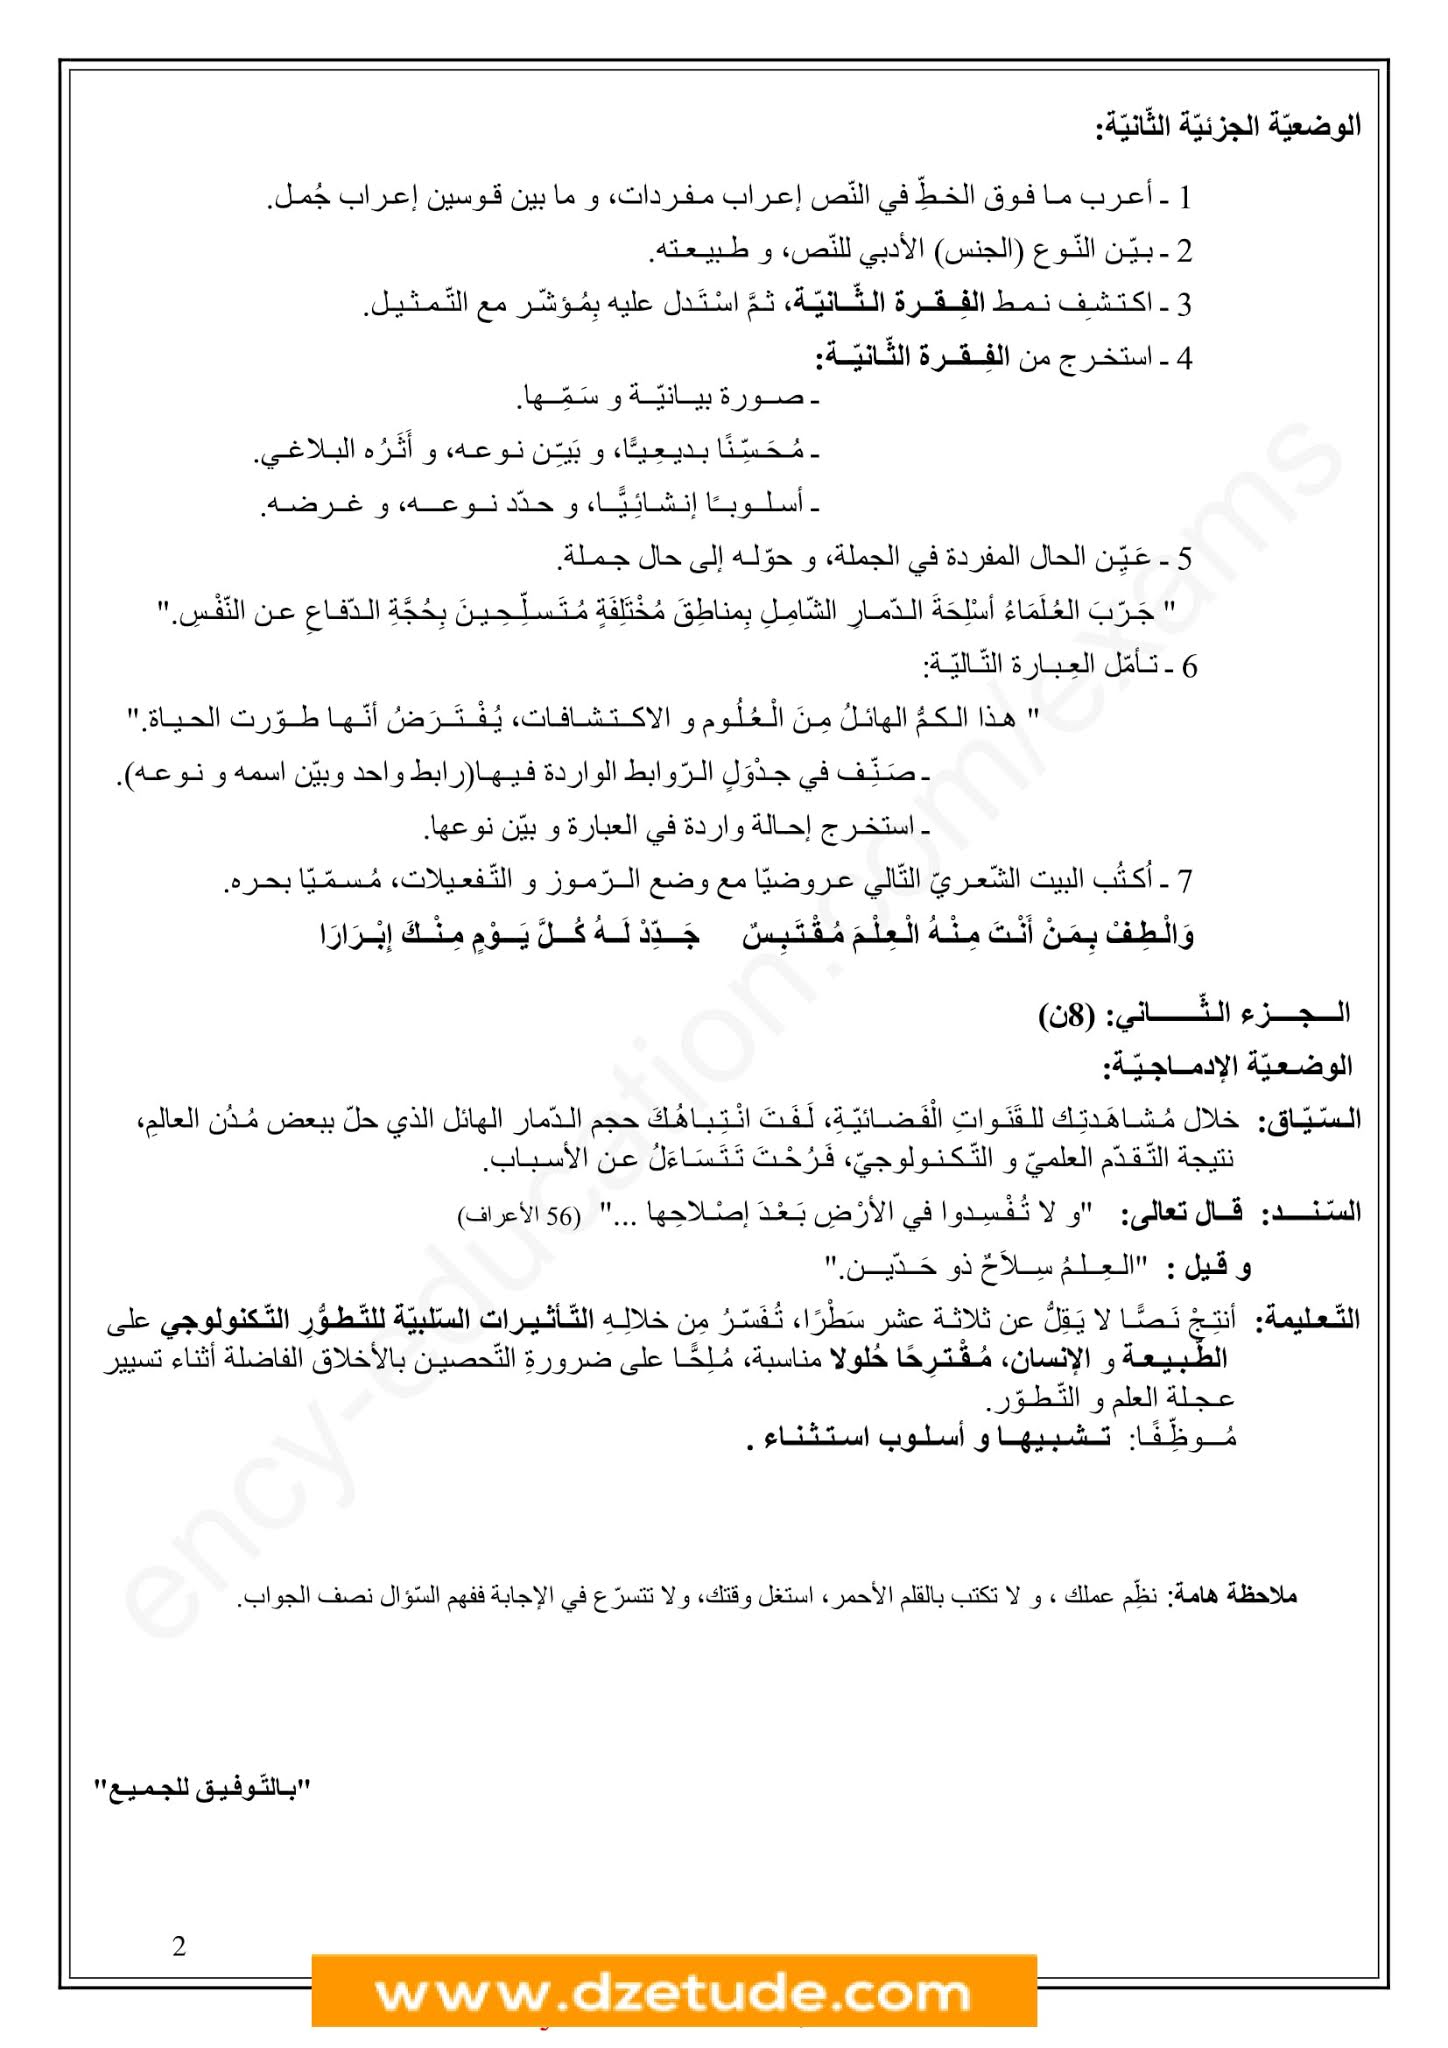 إختبار اللغة العربية الفصل الثاني للسنة الرابعة متوسط - الجيل الثاني نموذج 4